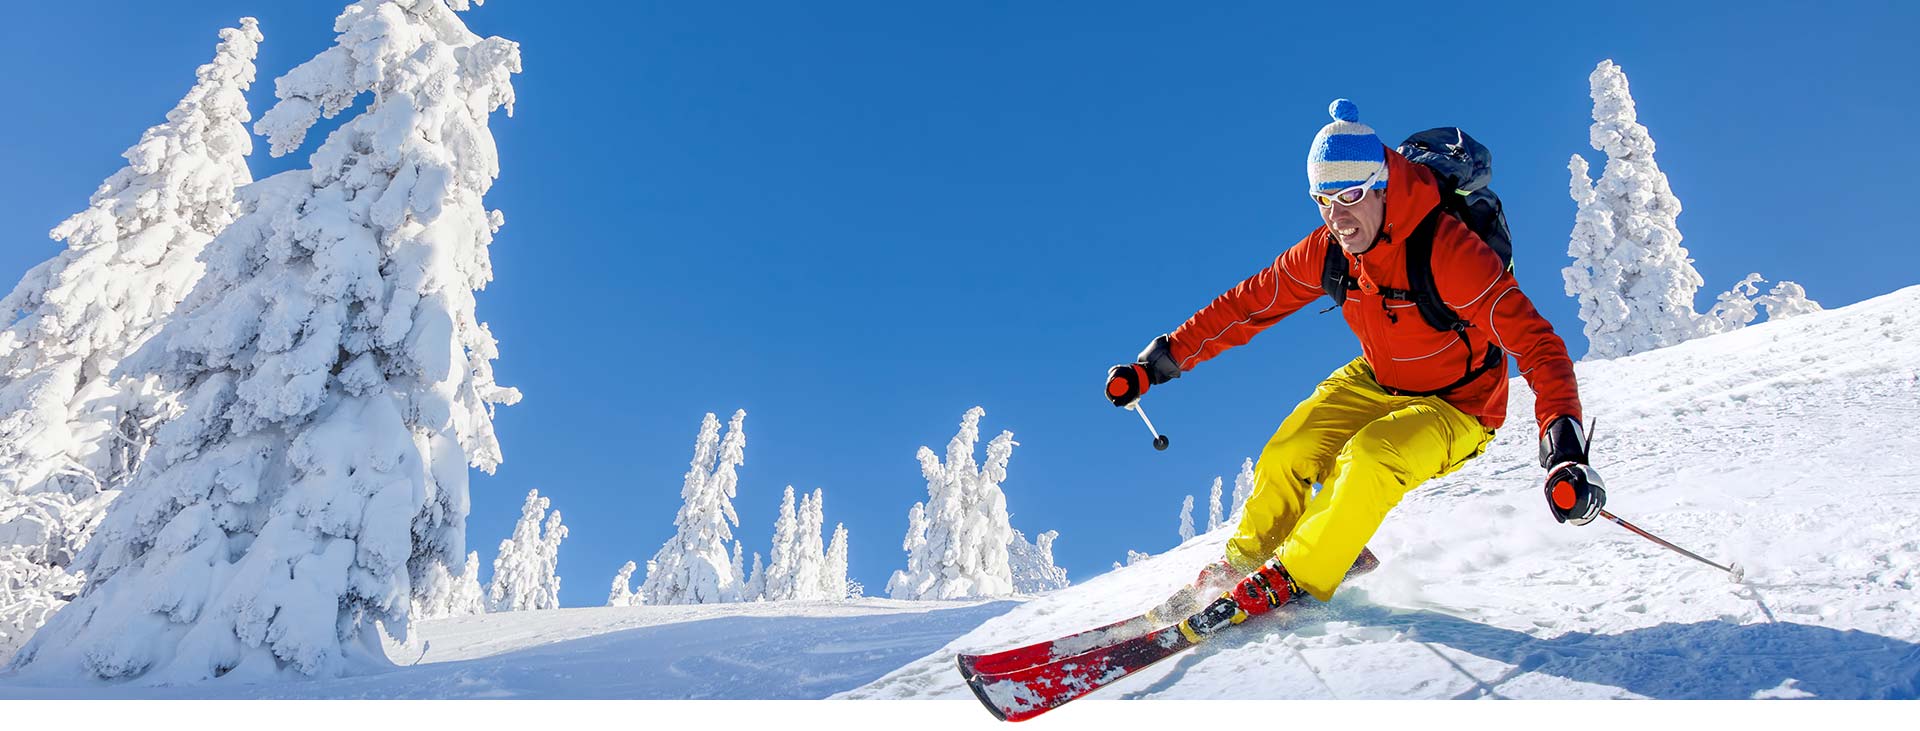 Ski Rentals in Federal Way and Kent, WA - Moxies